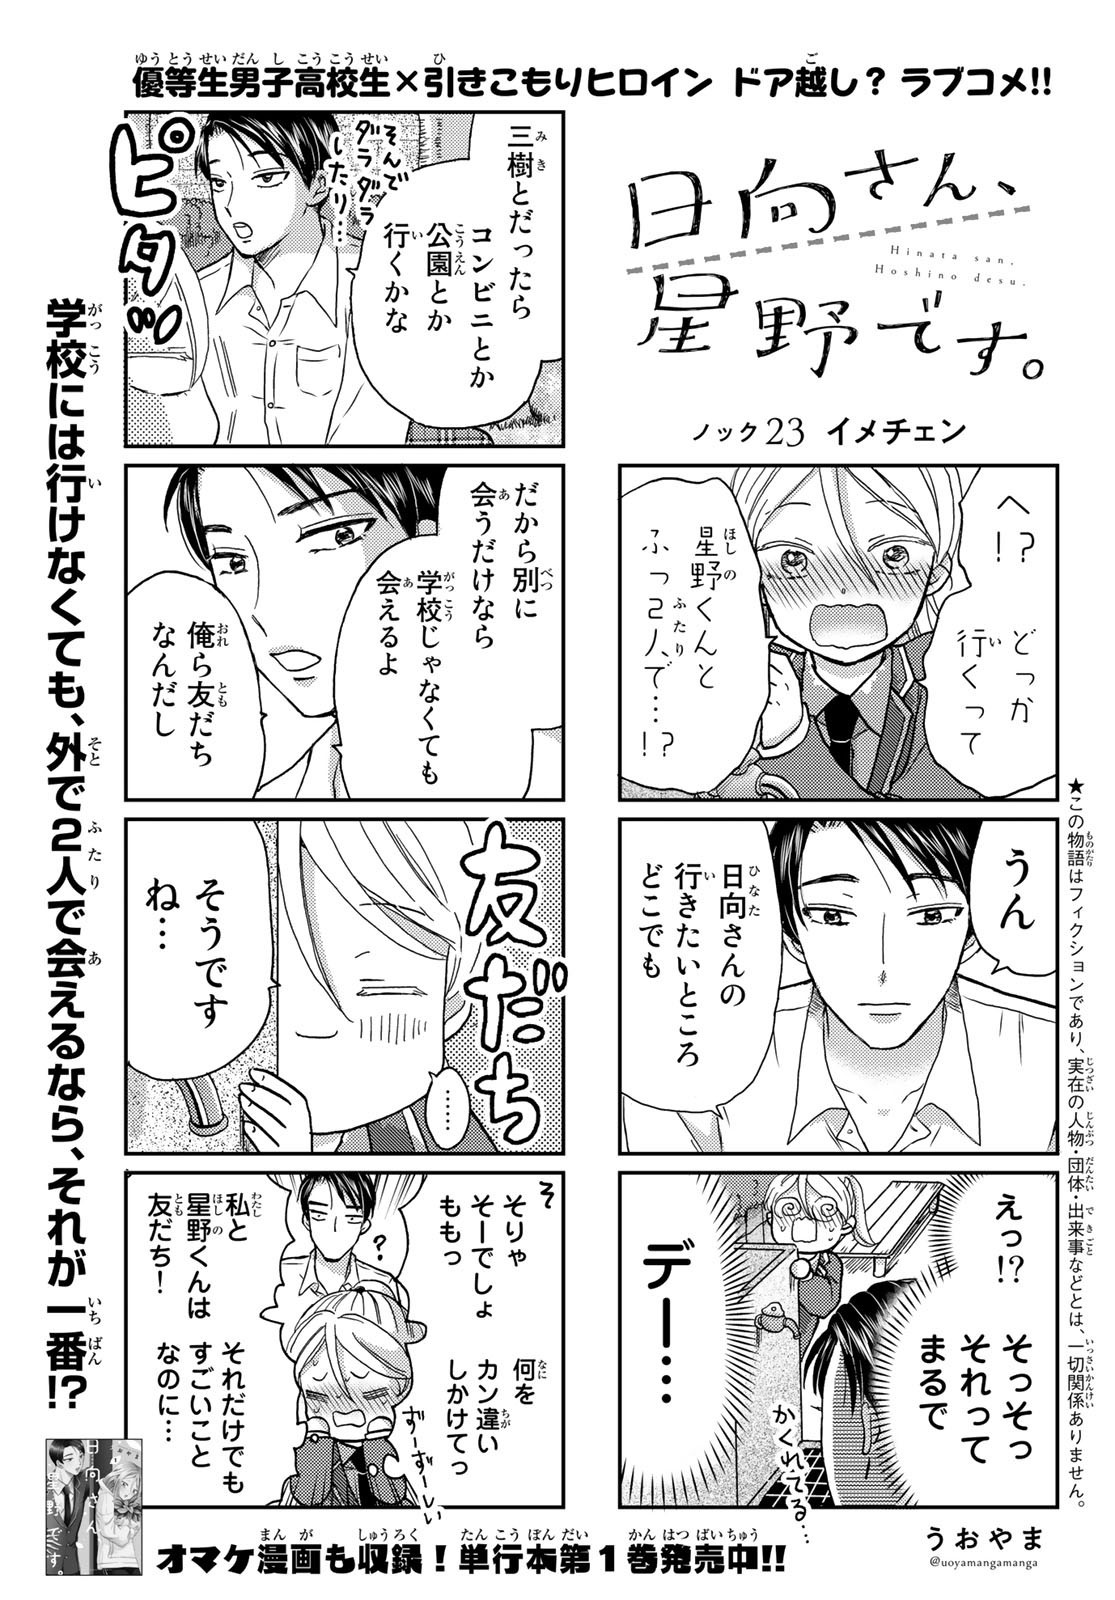 Hinata-san, Hoshino desu. - Chapter 023 - Page 1